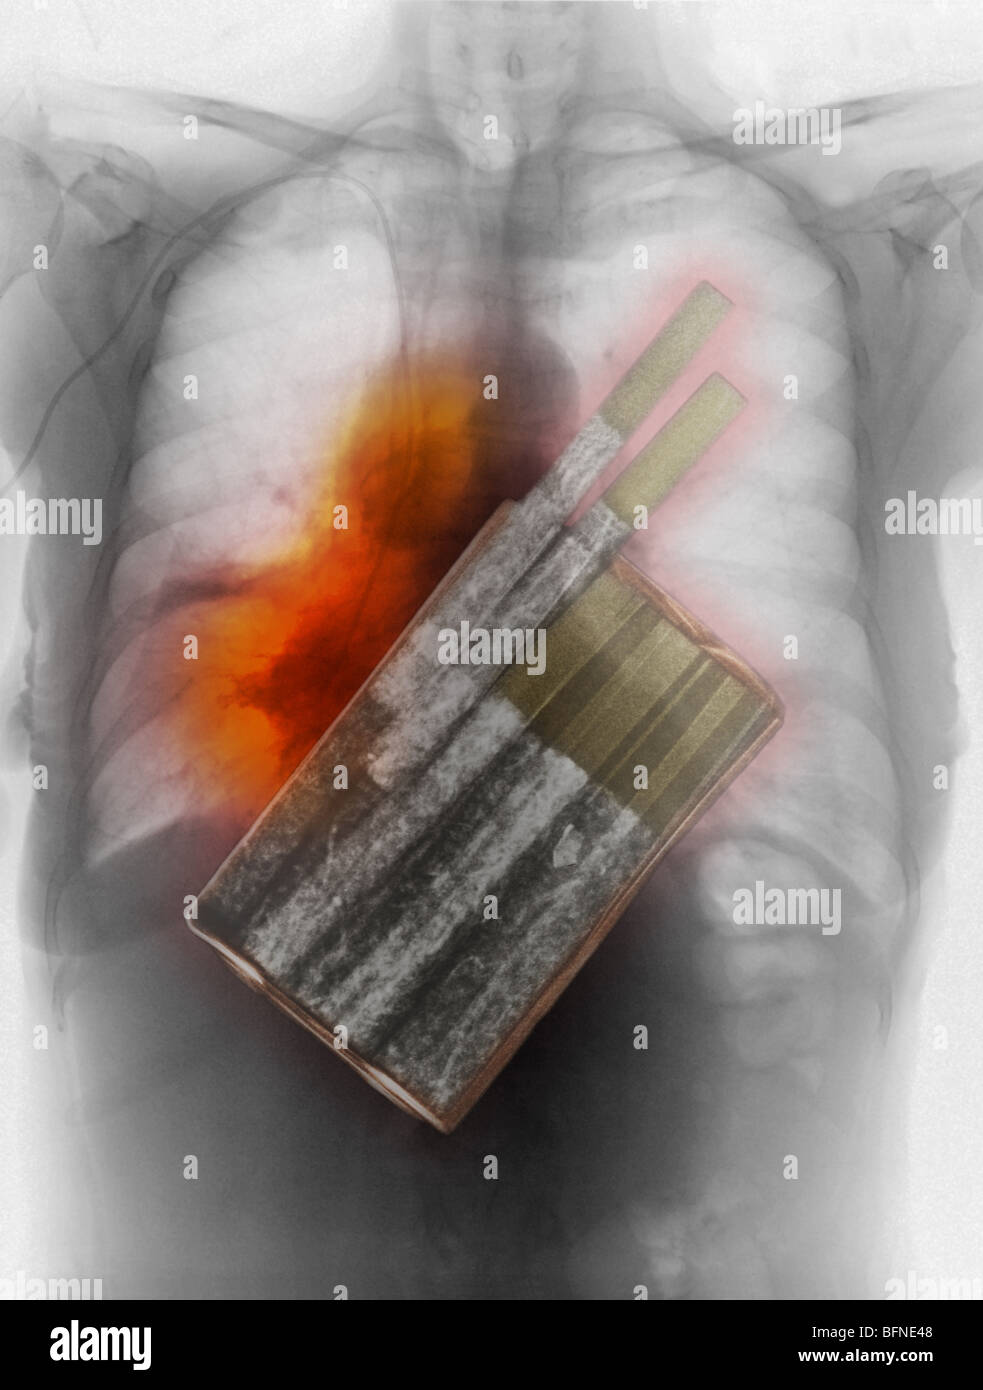 Zigaretten, die primäre Ursache von Lungenkrebs, eine Brust Röntgen zeigt Lungenkrebs überlagert Stockfoto